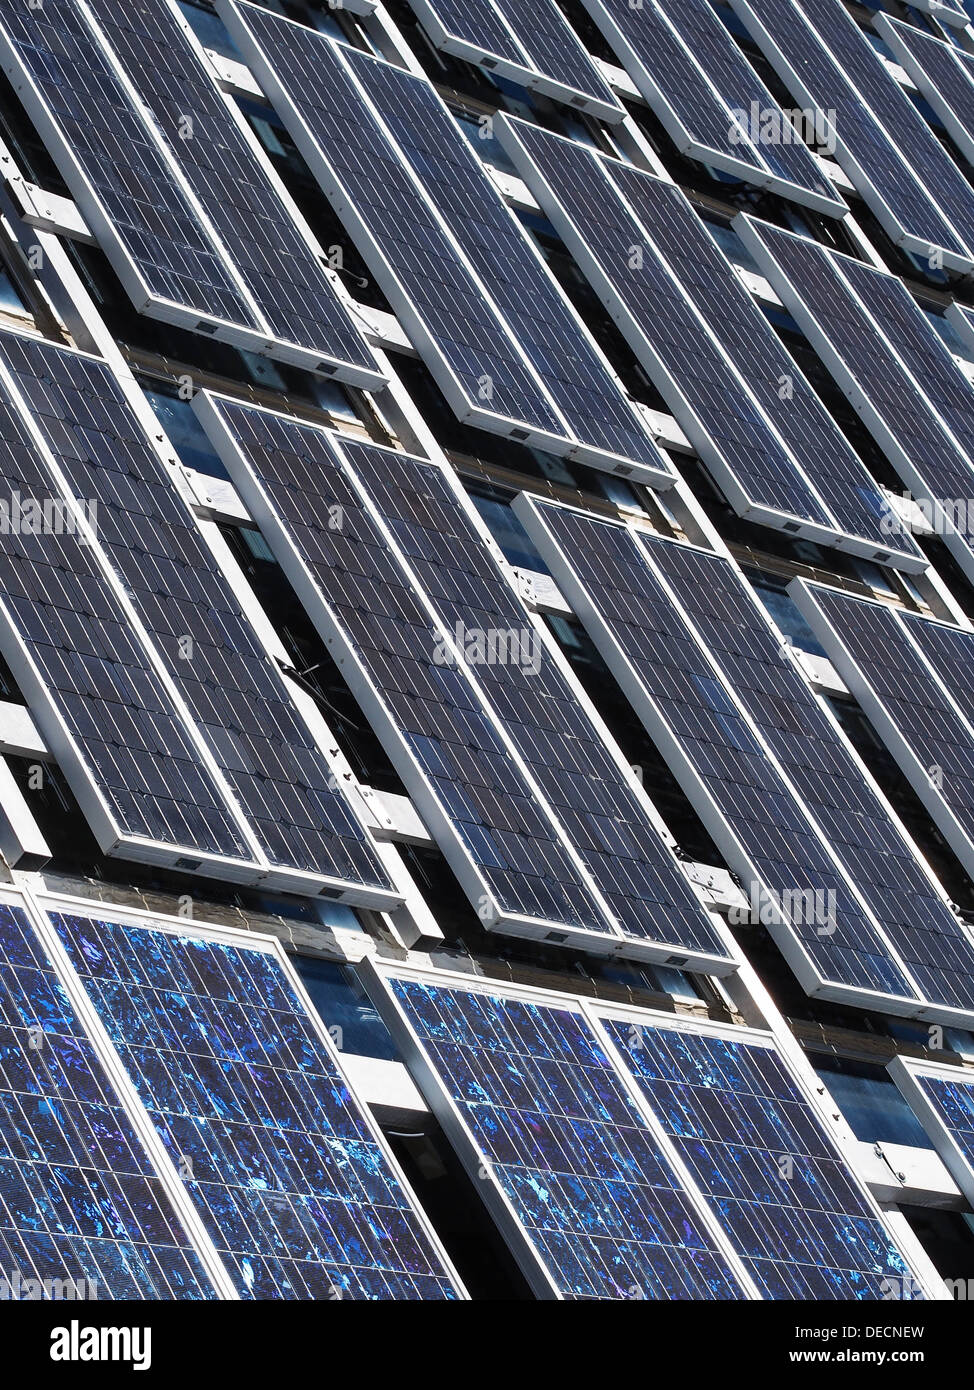 Vista dei pannelli solari fotovoltaici, che assorbono la luce del sole come fonte di energia per generare elettricità. Foto Stock